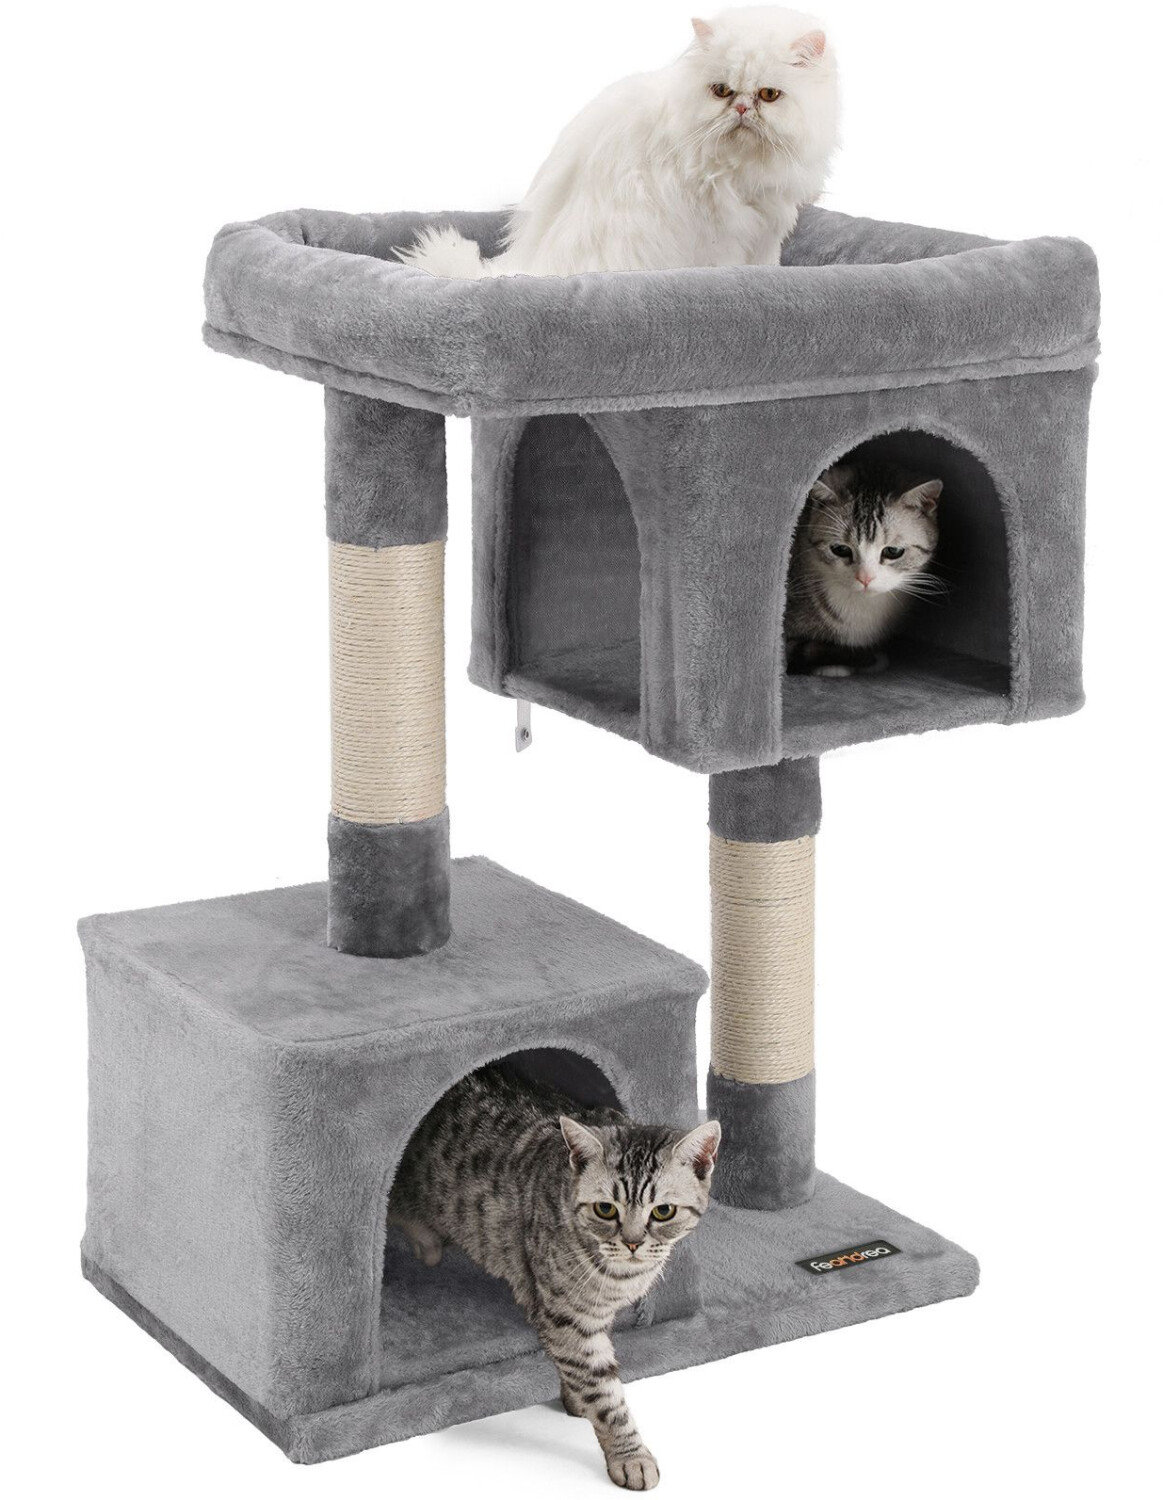 Домик для кошек с когтеточкой купить недорого. Домик-когтеточка pa 4046 (для кошек). Домик когтеточка Pet БМФ для кошки, 35х35х62 см, серый. Когтеточка Pet БМФ "якше-мини" с лежаком.